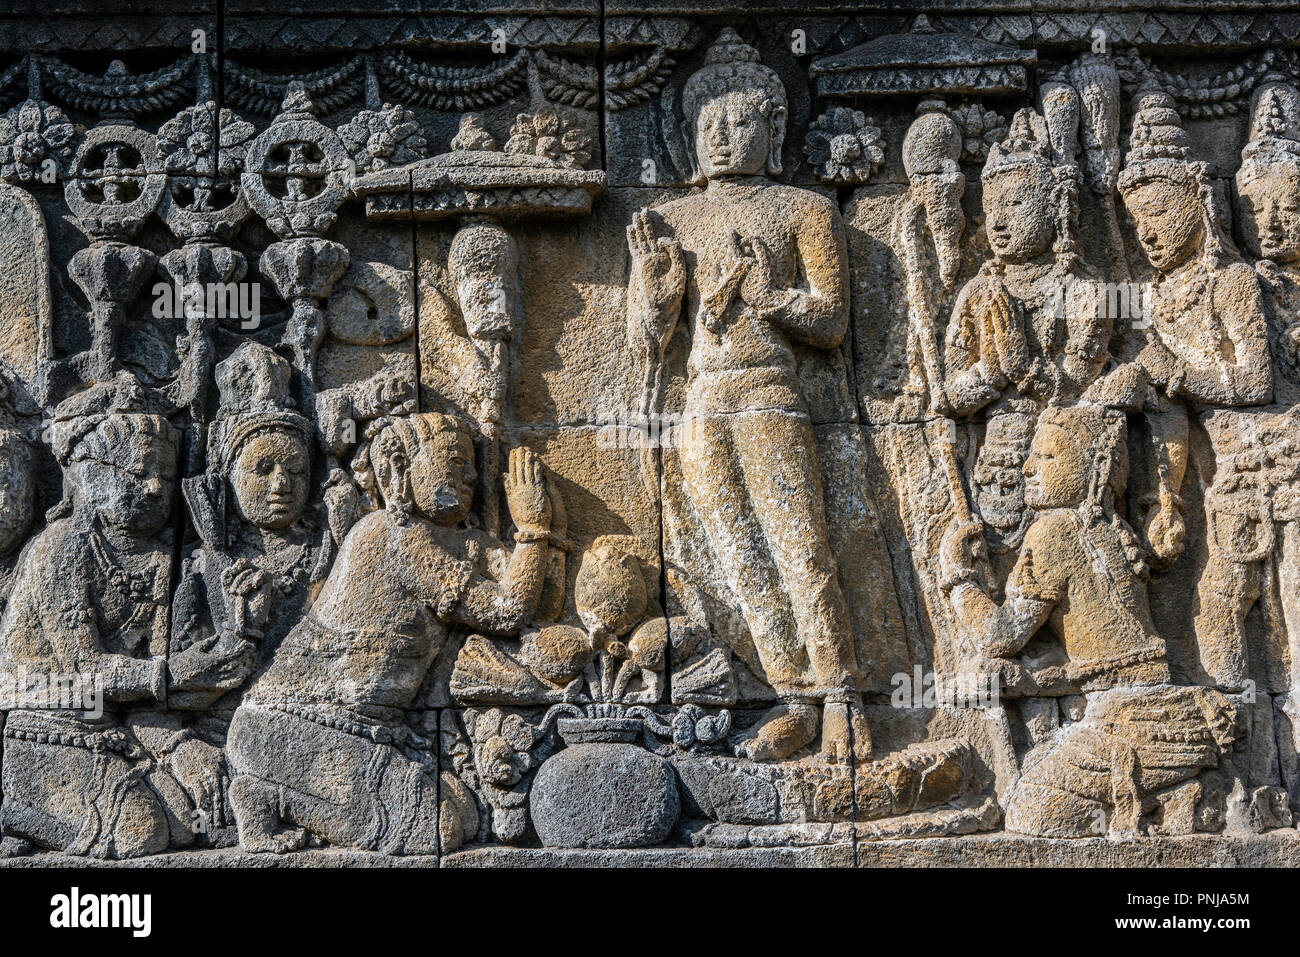 Détail de bas-reliefs, Candi Borobudur temple bouddhiste, Muntilan, Java, Indonésie Banque D'Images